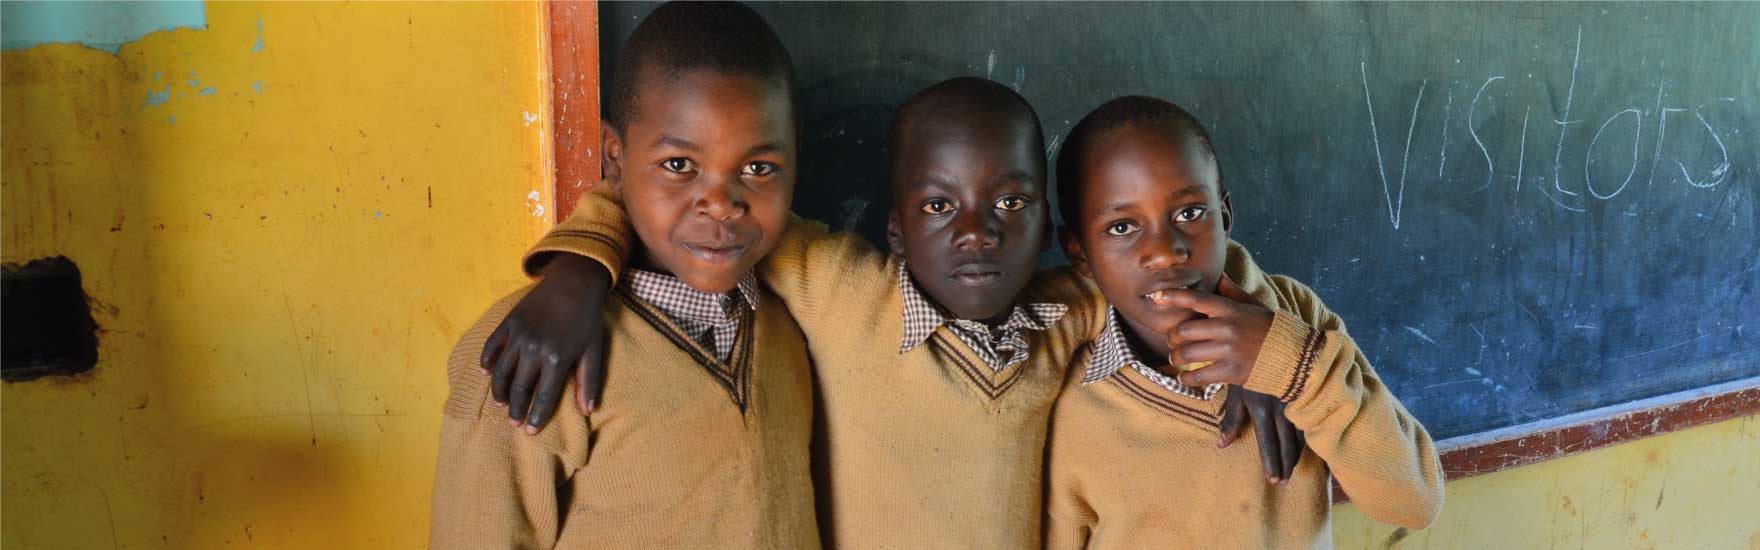 Patenschaft Kinder Kenya